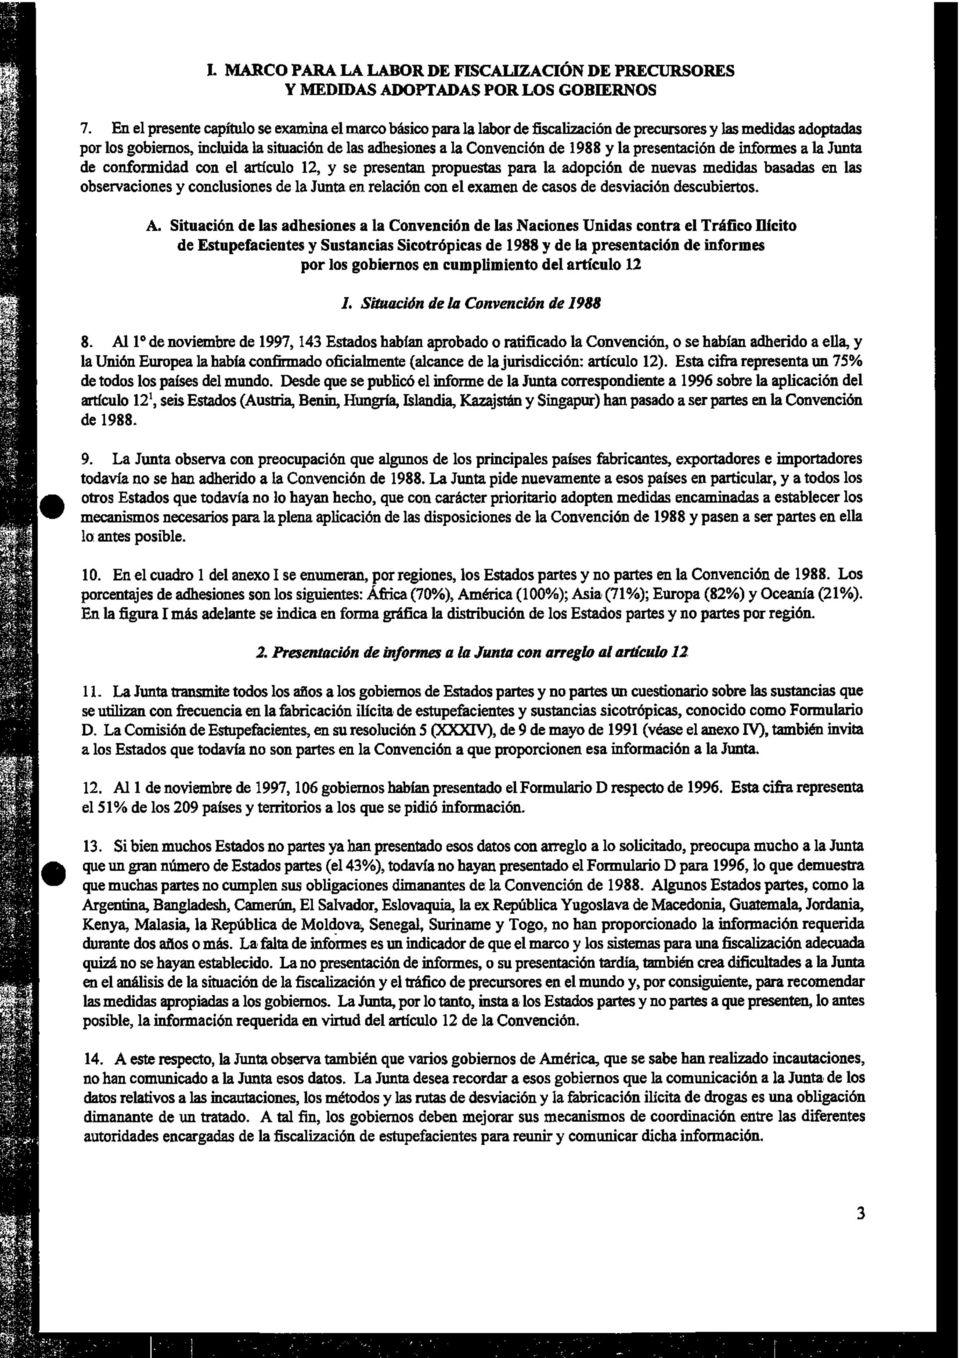 1988 y la presentación de informes a la Junta de conformidad con el artículo 12, y se presentan propuestas para la adopción de nuevas medidas basadas en las observaciones y conclusiones de la Junta